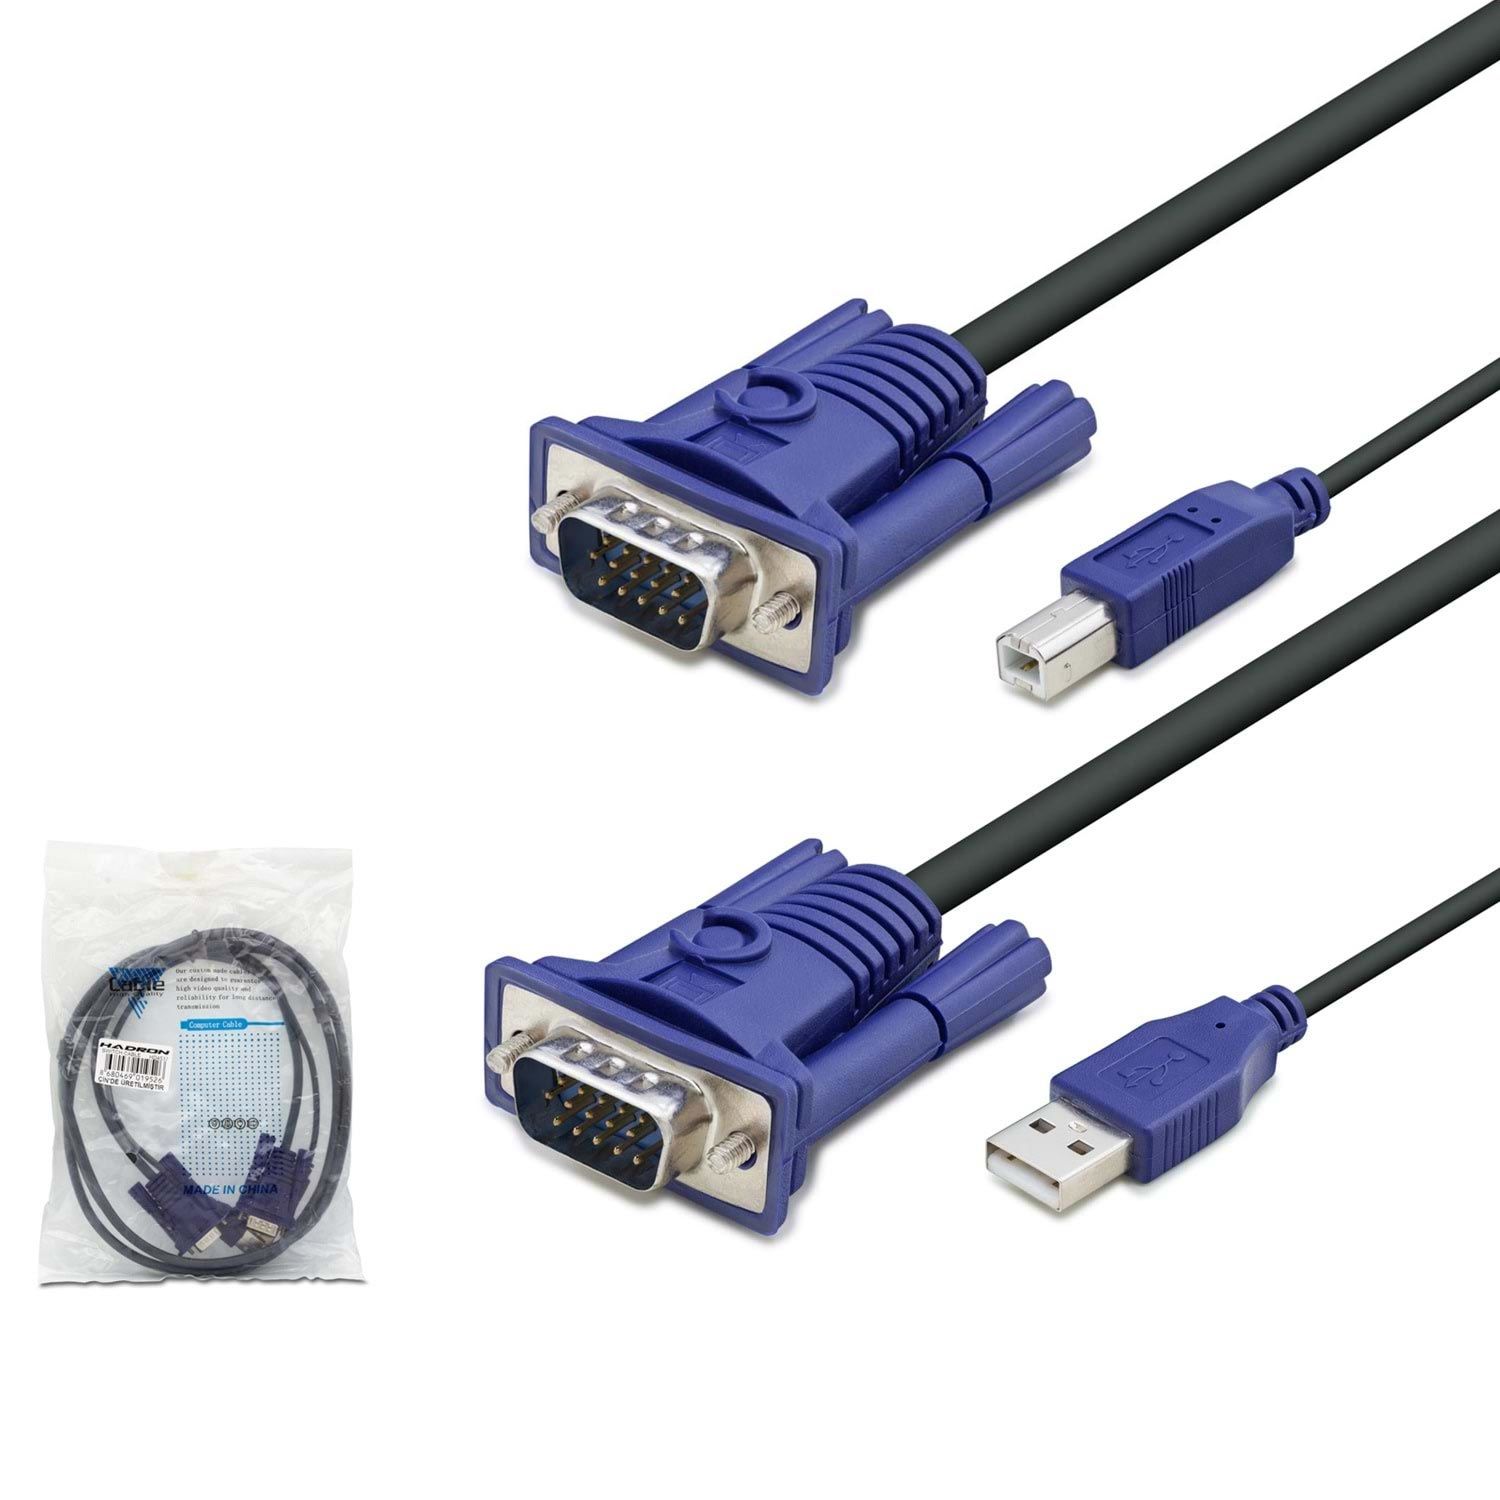 SWITCH KABLO (VGA TO VGA USB TO PRINTER) HADRON HD-4537